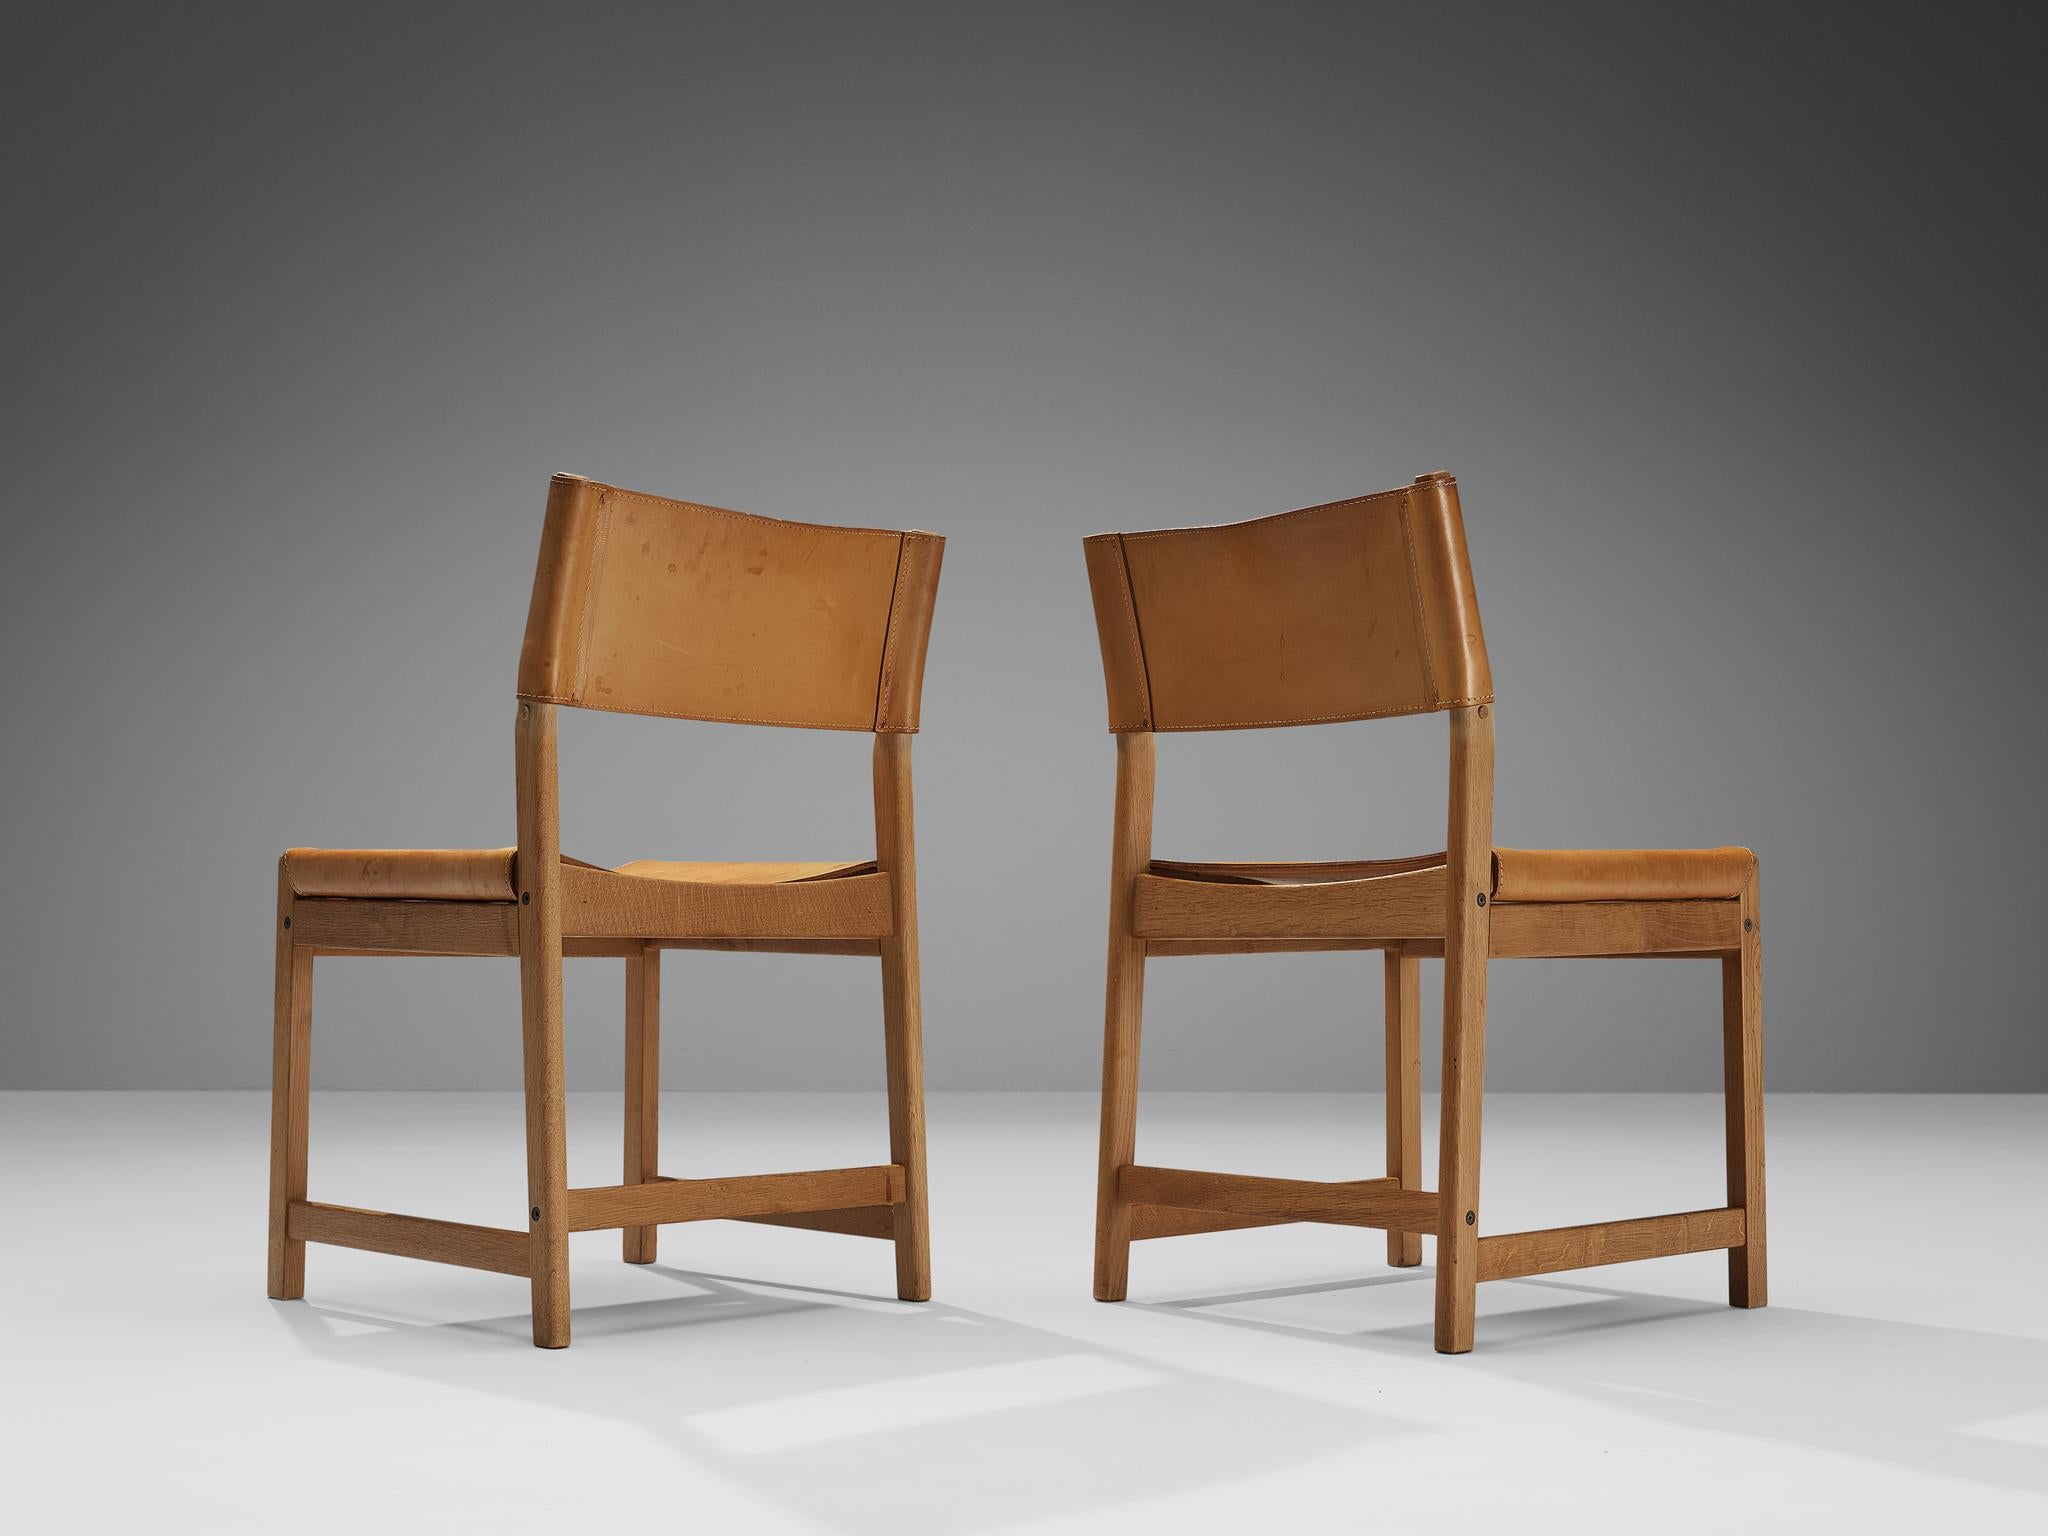 Kurt Østervig pour Sibast, paire de chaises de salle à manger, cuir cognac, chêne, Danemark, années 1960. 

Ces chaises caractéristiques sont fabriquées en chêne massif, avec une assise et un dossier en cuir cognac épais. Les lignes et les formes